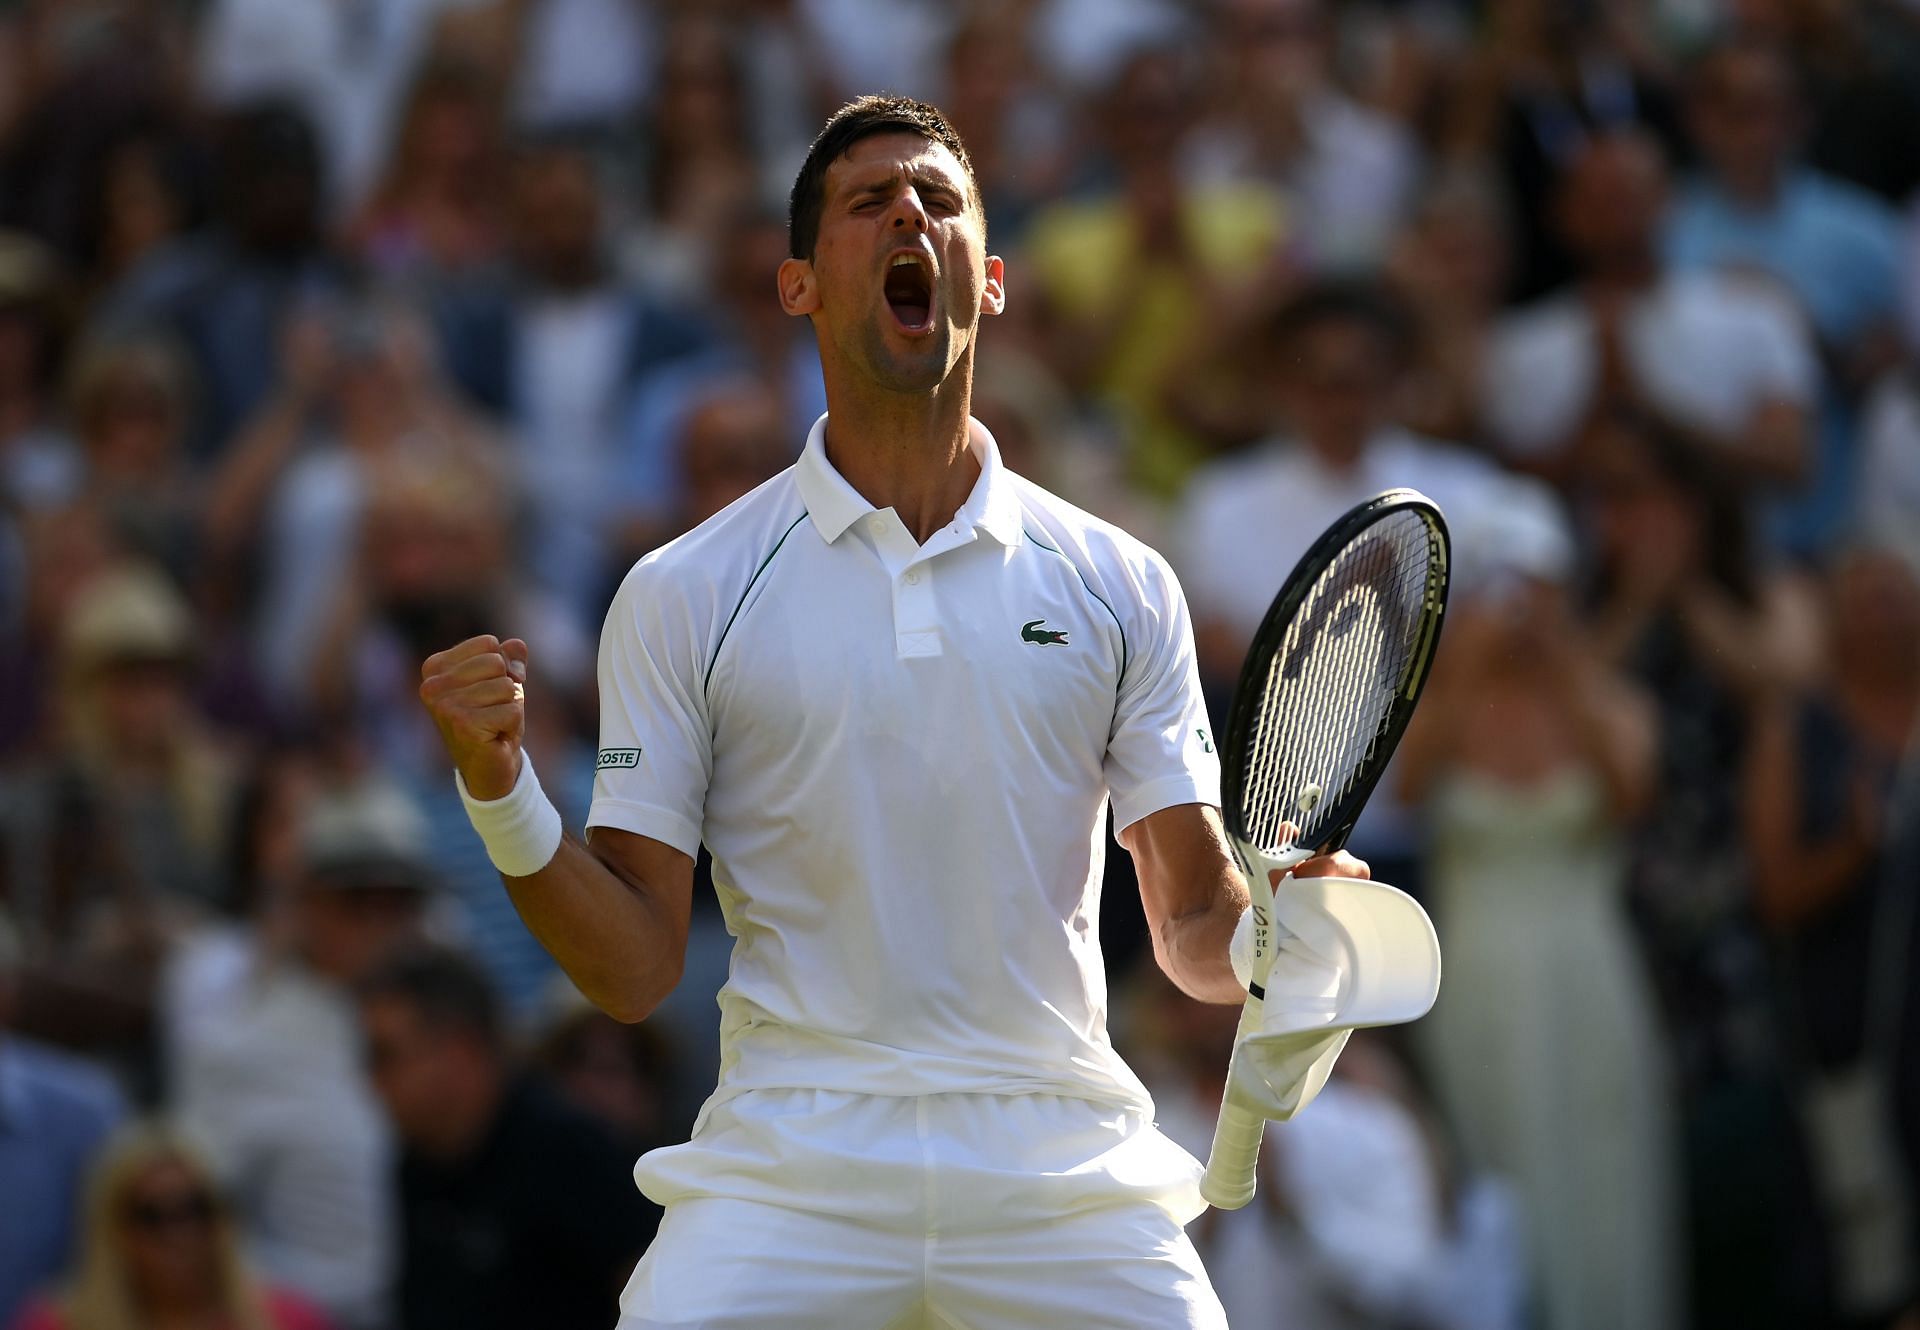 Novak Djokovic exults after reaching the Wimbledon final on Friday.